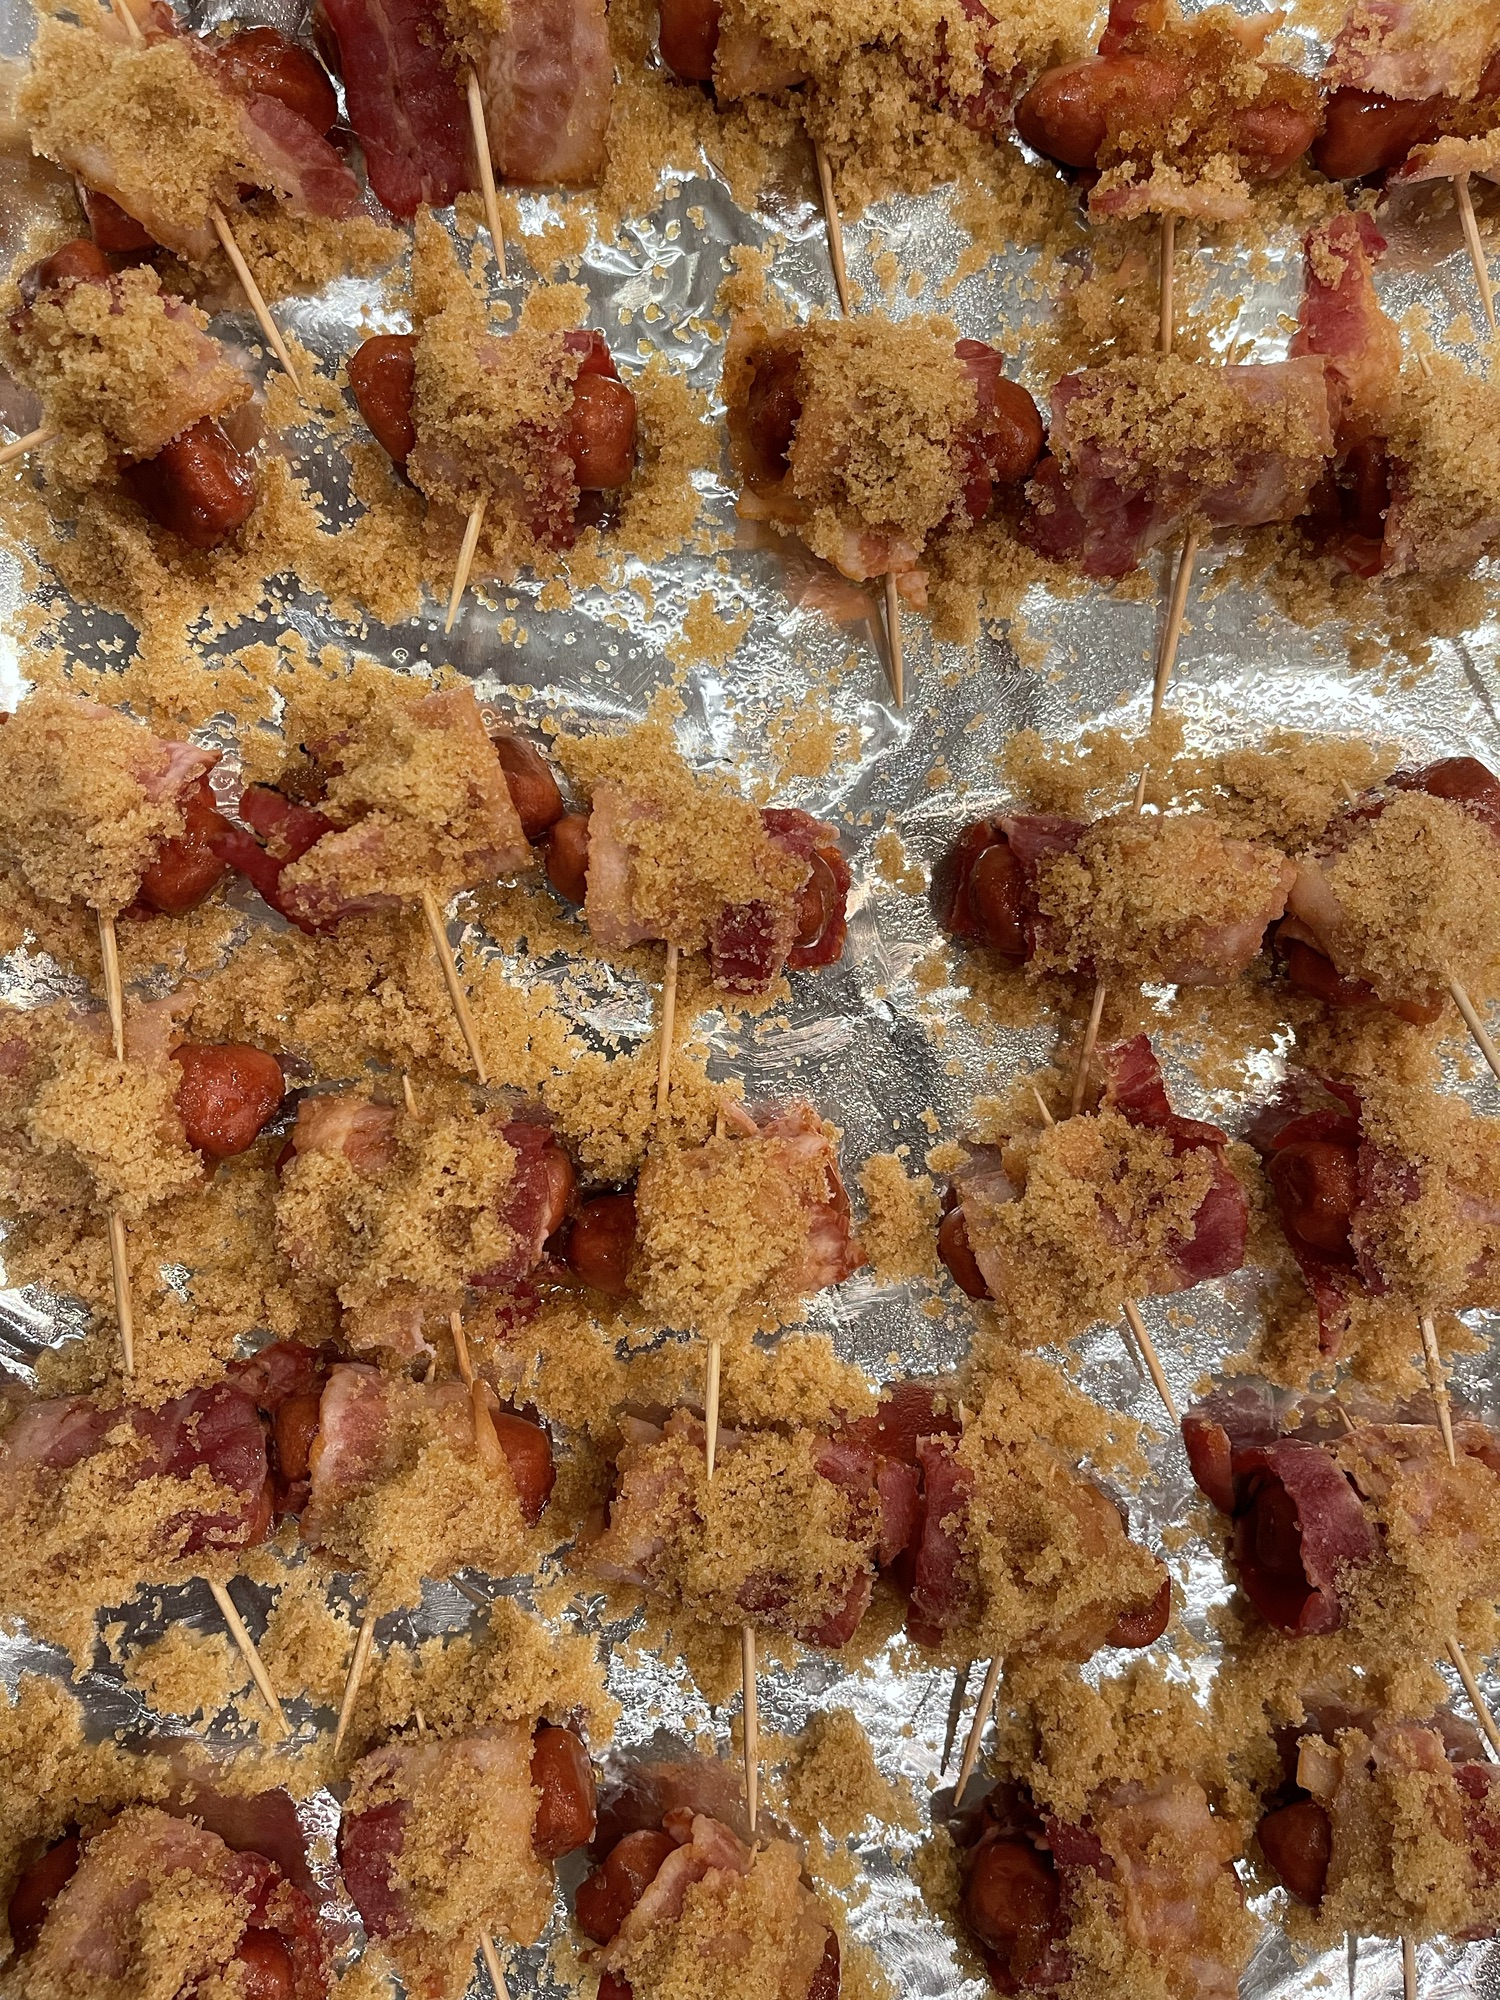 Bacon-Wrapped Smokies